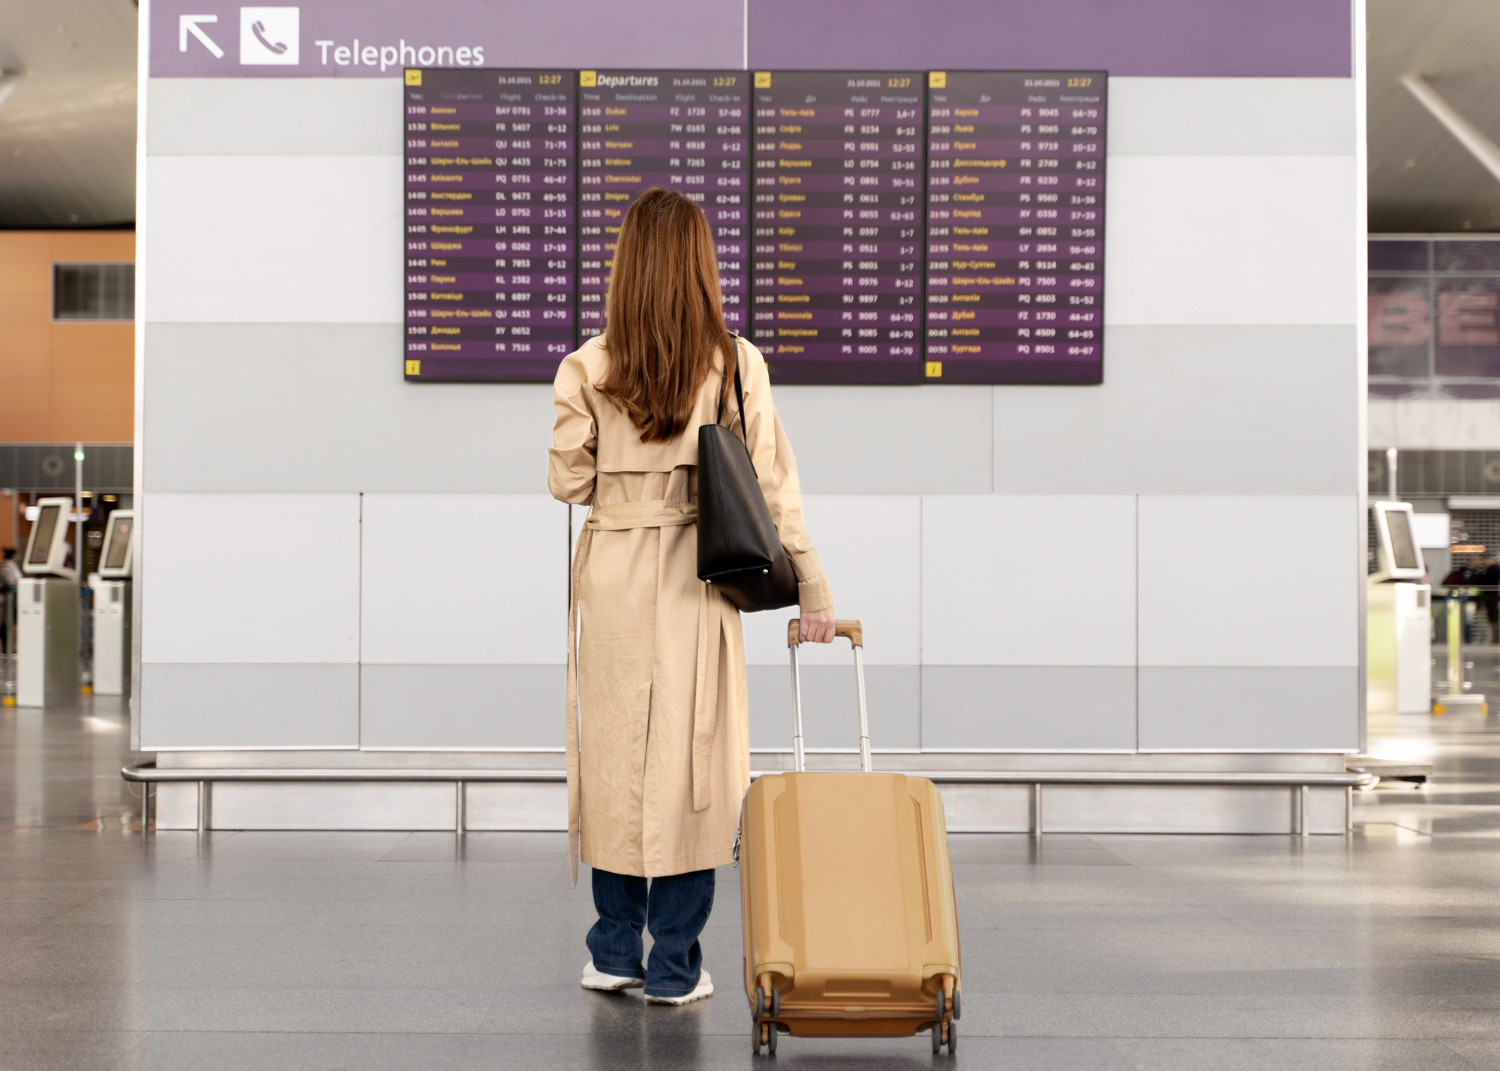 5 τρόποι για να παραμείνεις ήρεμη στο αεροδρόμιο εν μέσω καθυστερήσεων και ακυρώσεων πτήσεων